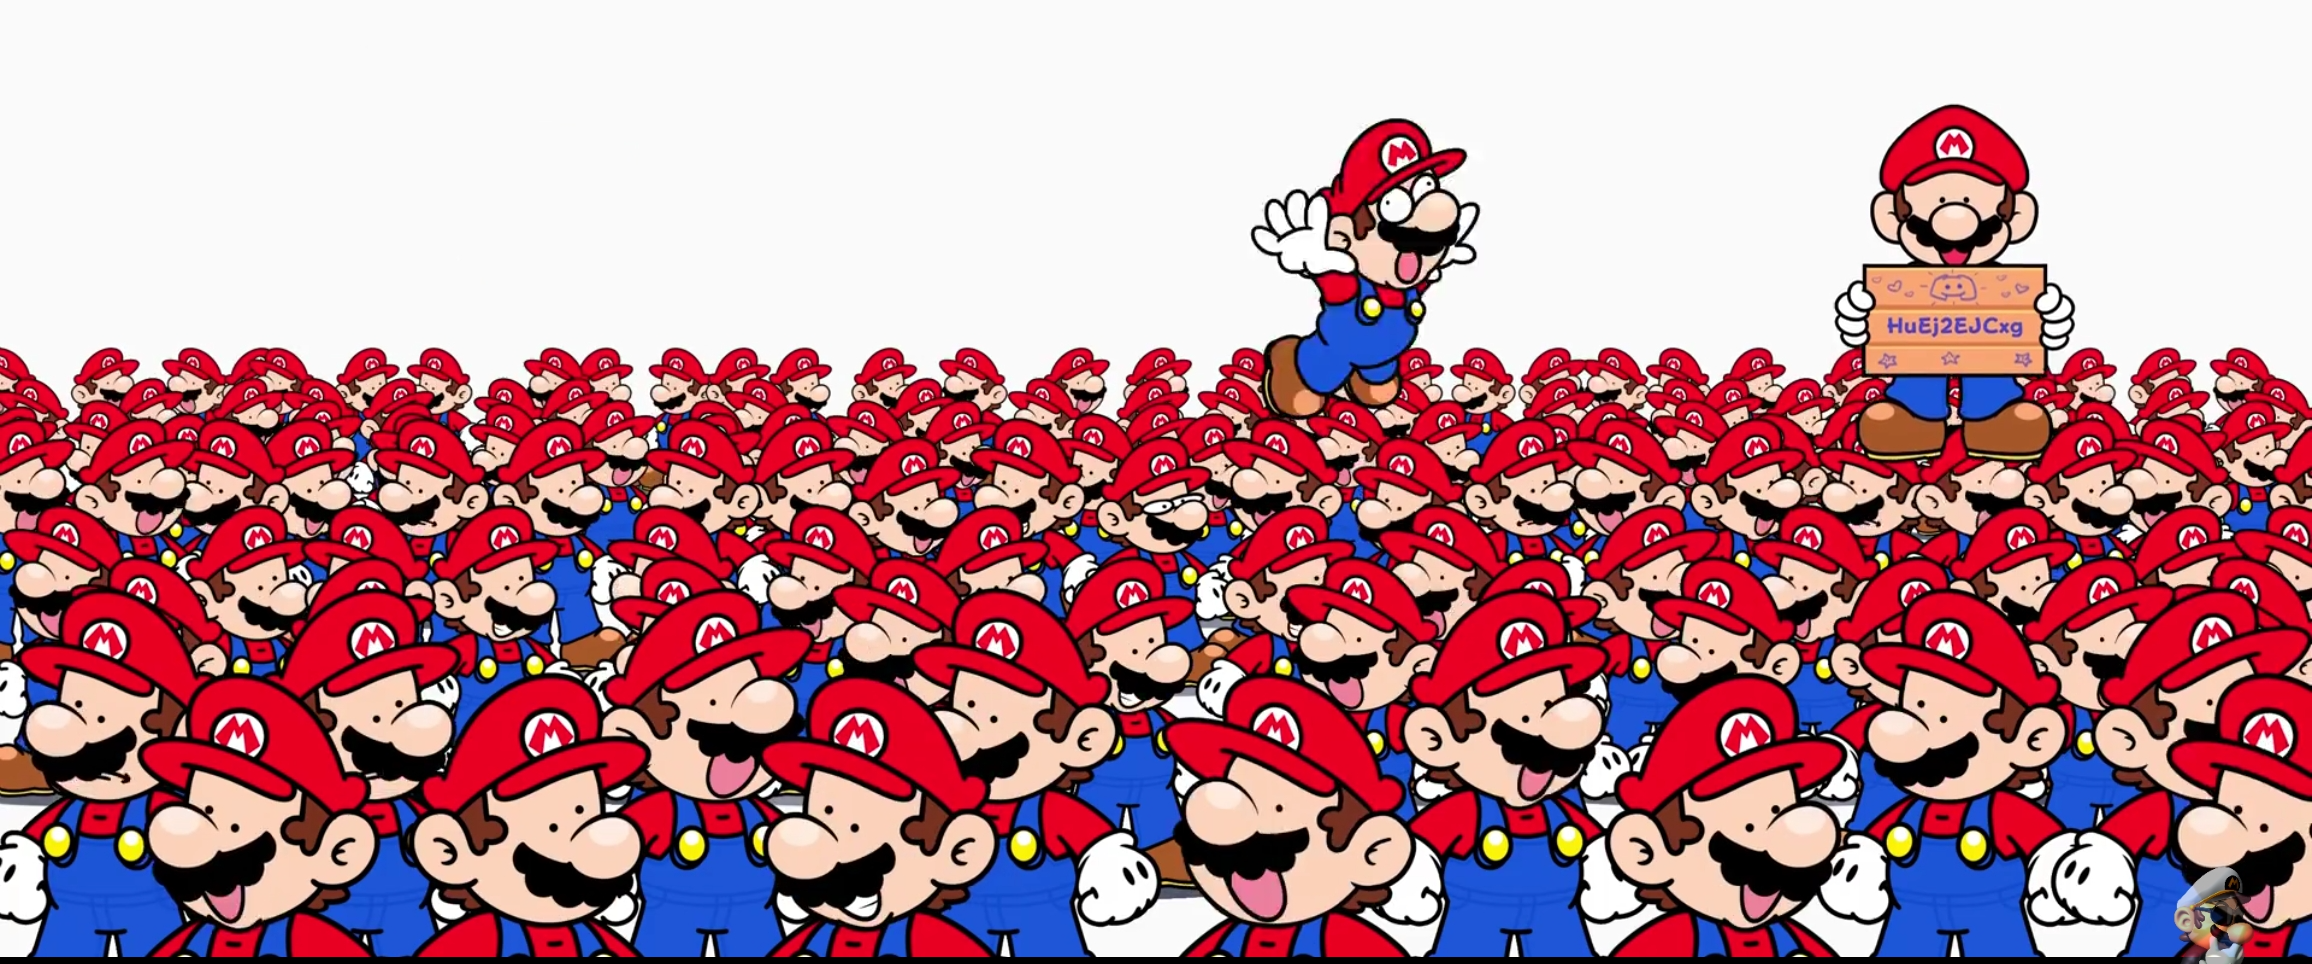 Room of Marios Blank Meme Template